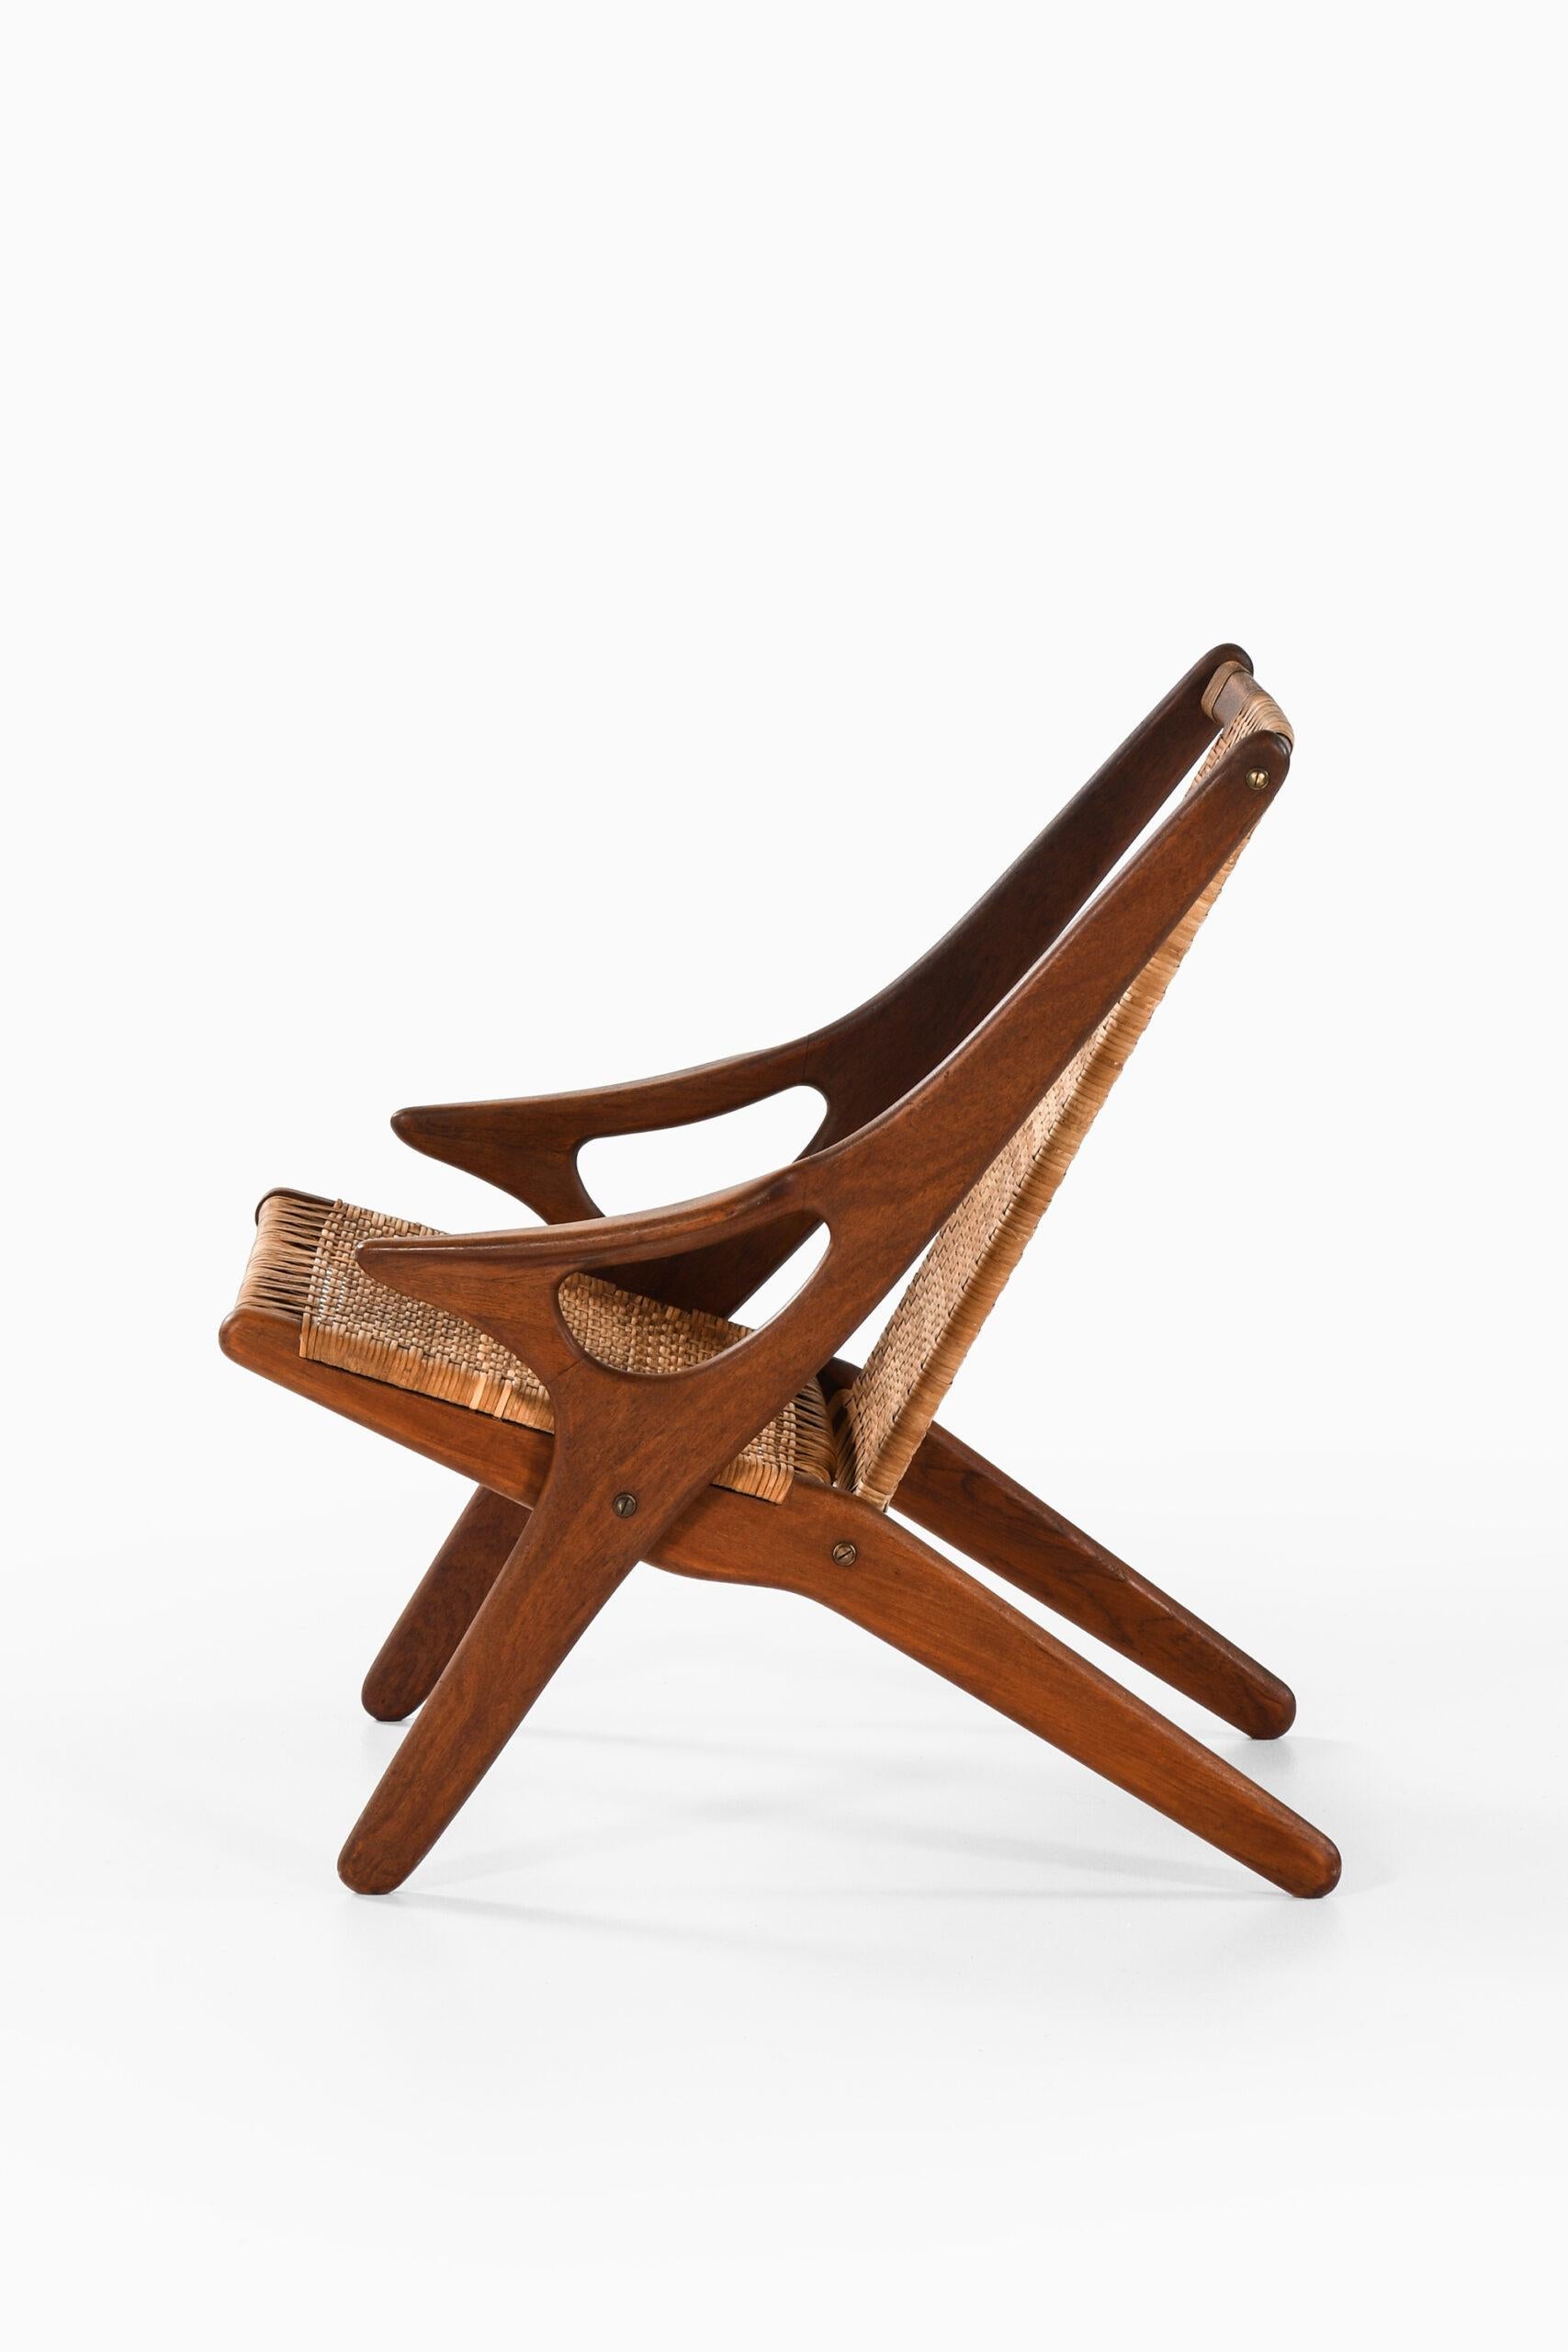 Rare fauteuil conçu par Arne Hovmand/One. Produit par A.R. Klingenberg & Søn au Danemark.